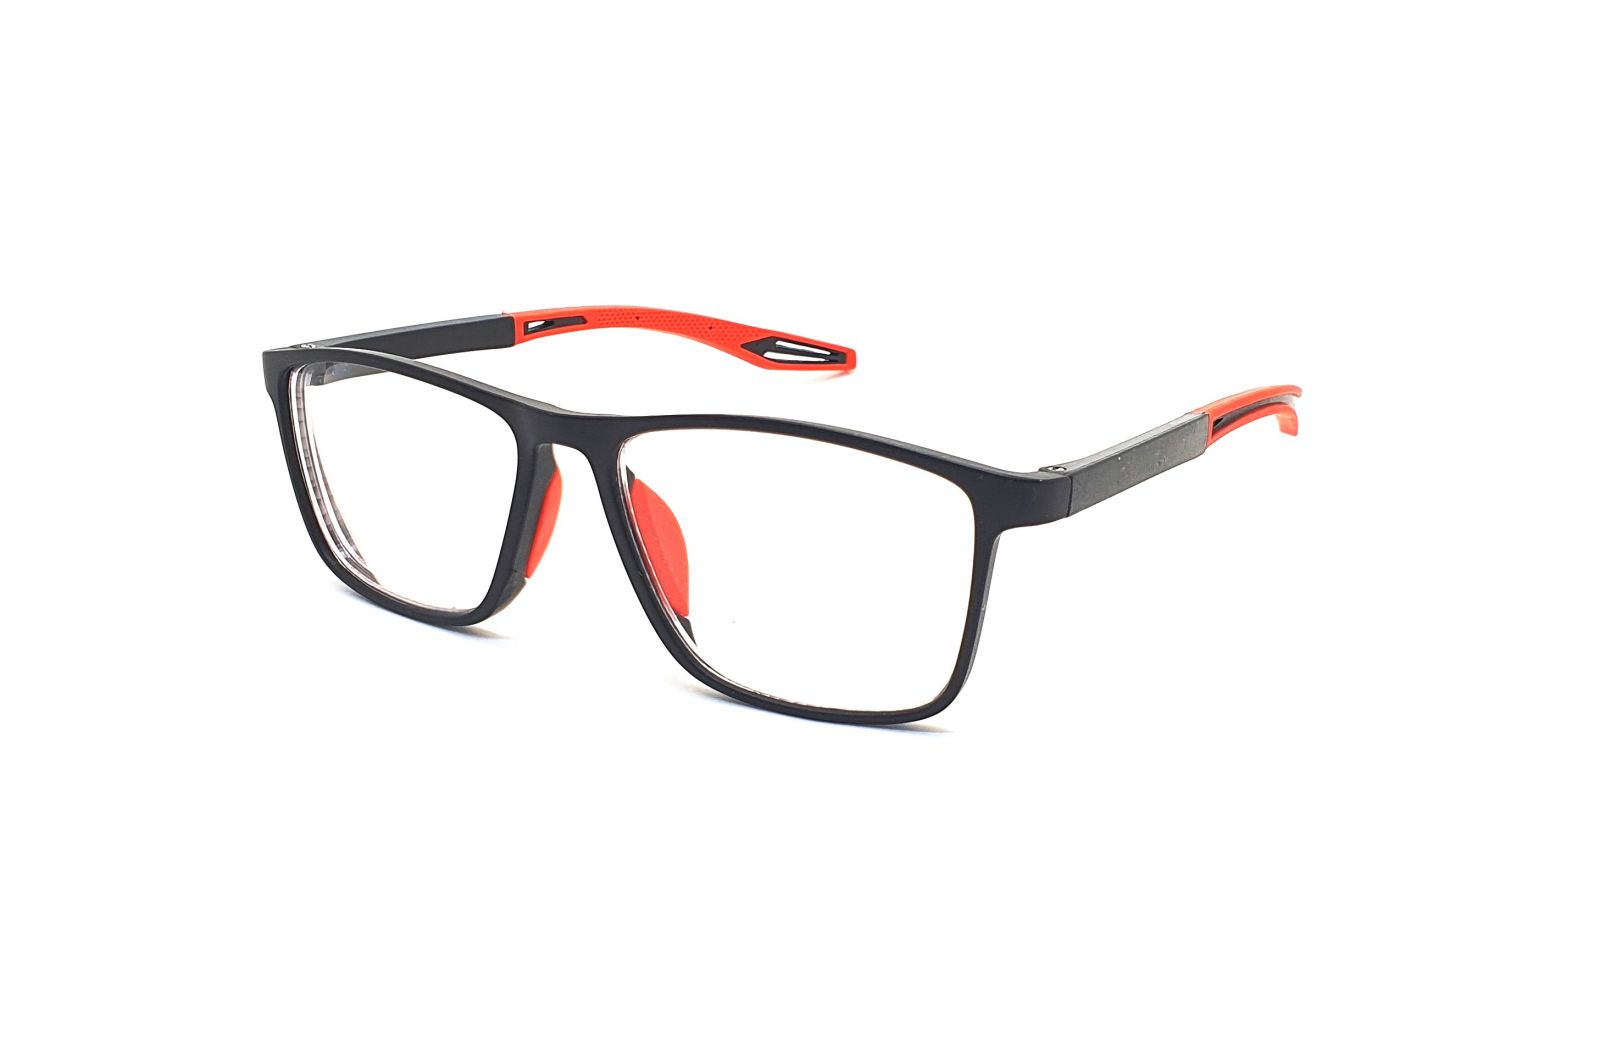 Samozabarvovací dioptrické brýle F04 / -2,00 black/red